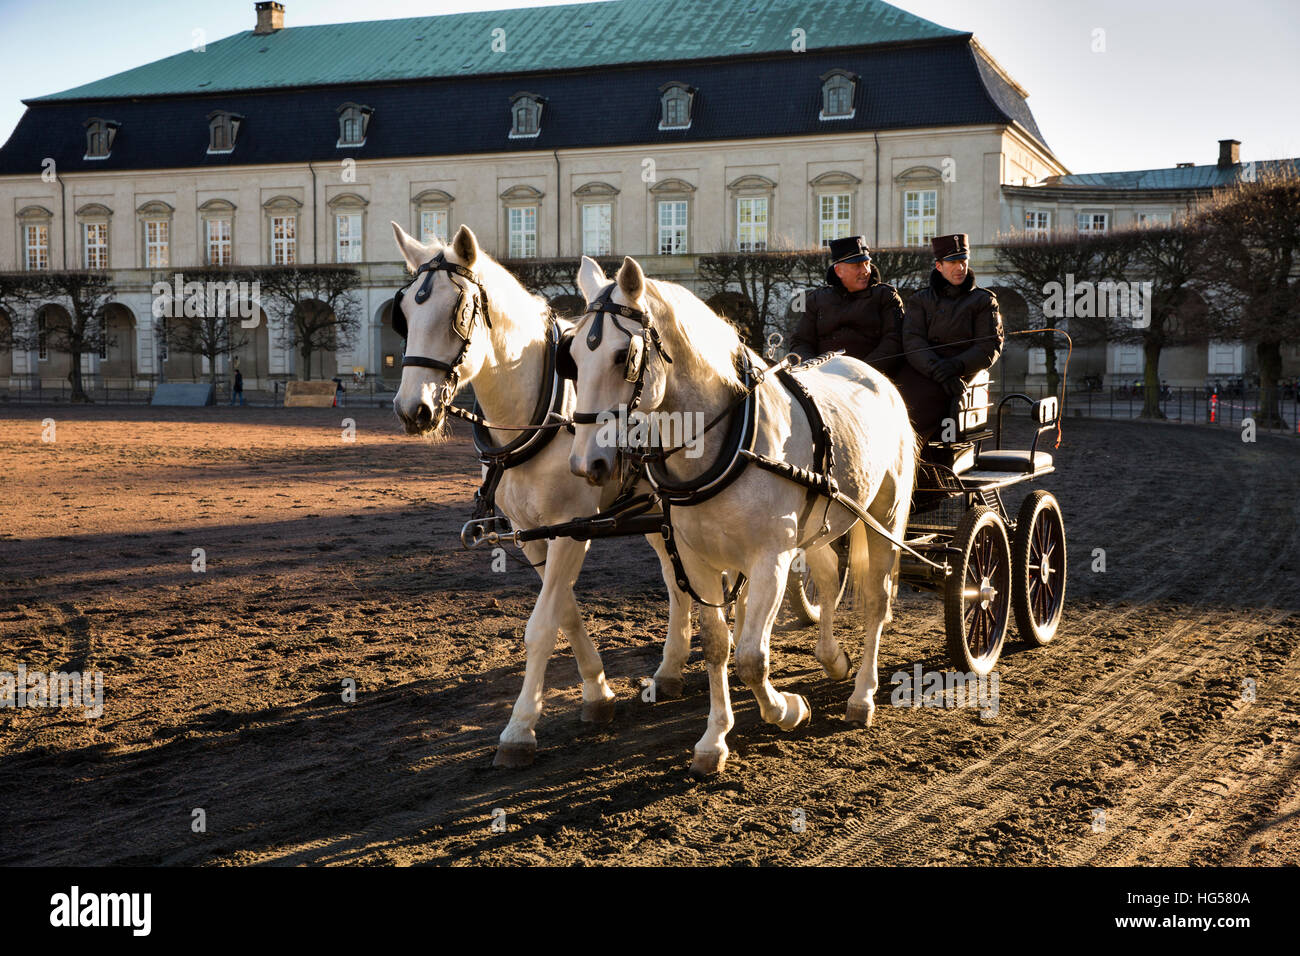 Danemark, copenhague, Christiansborg Palace, l'exercice de transport de chevaux dans la cour du palais Banque D'Images